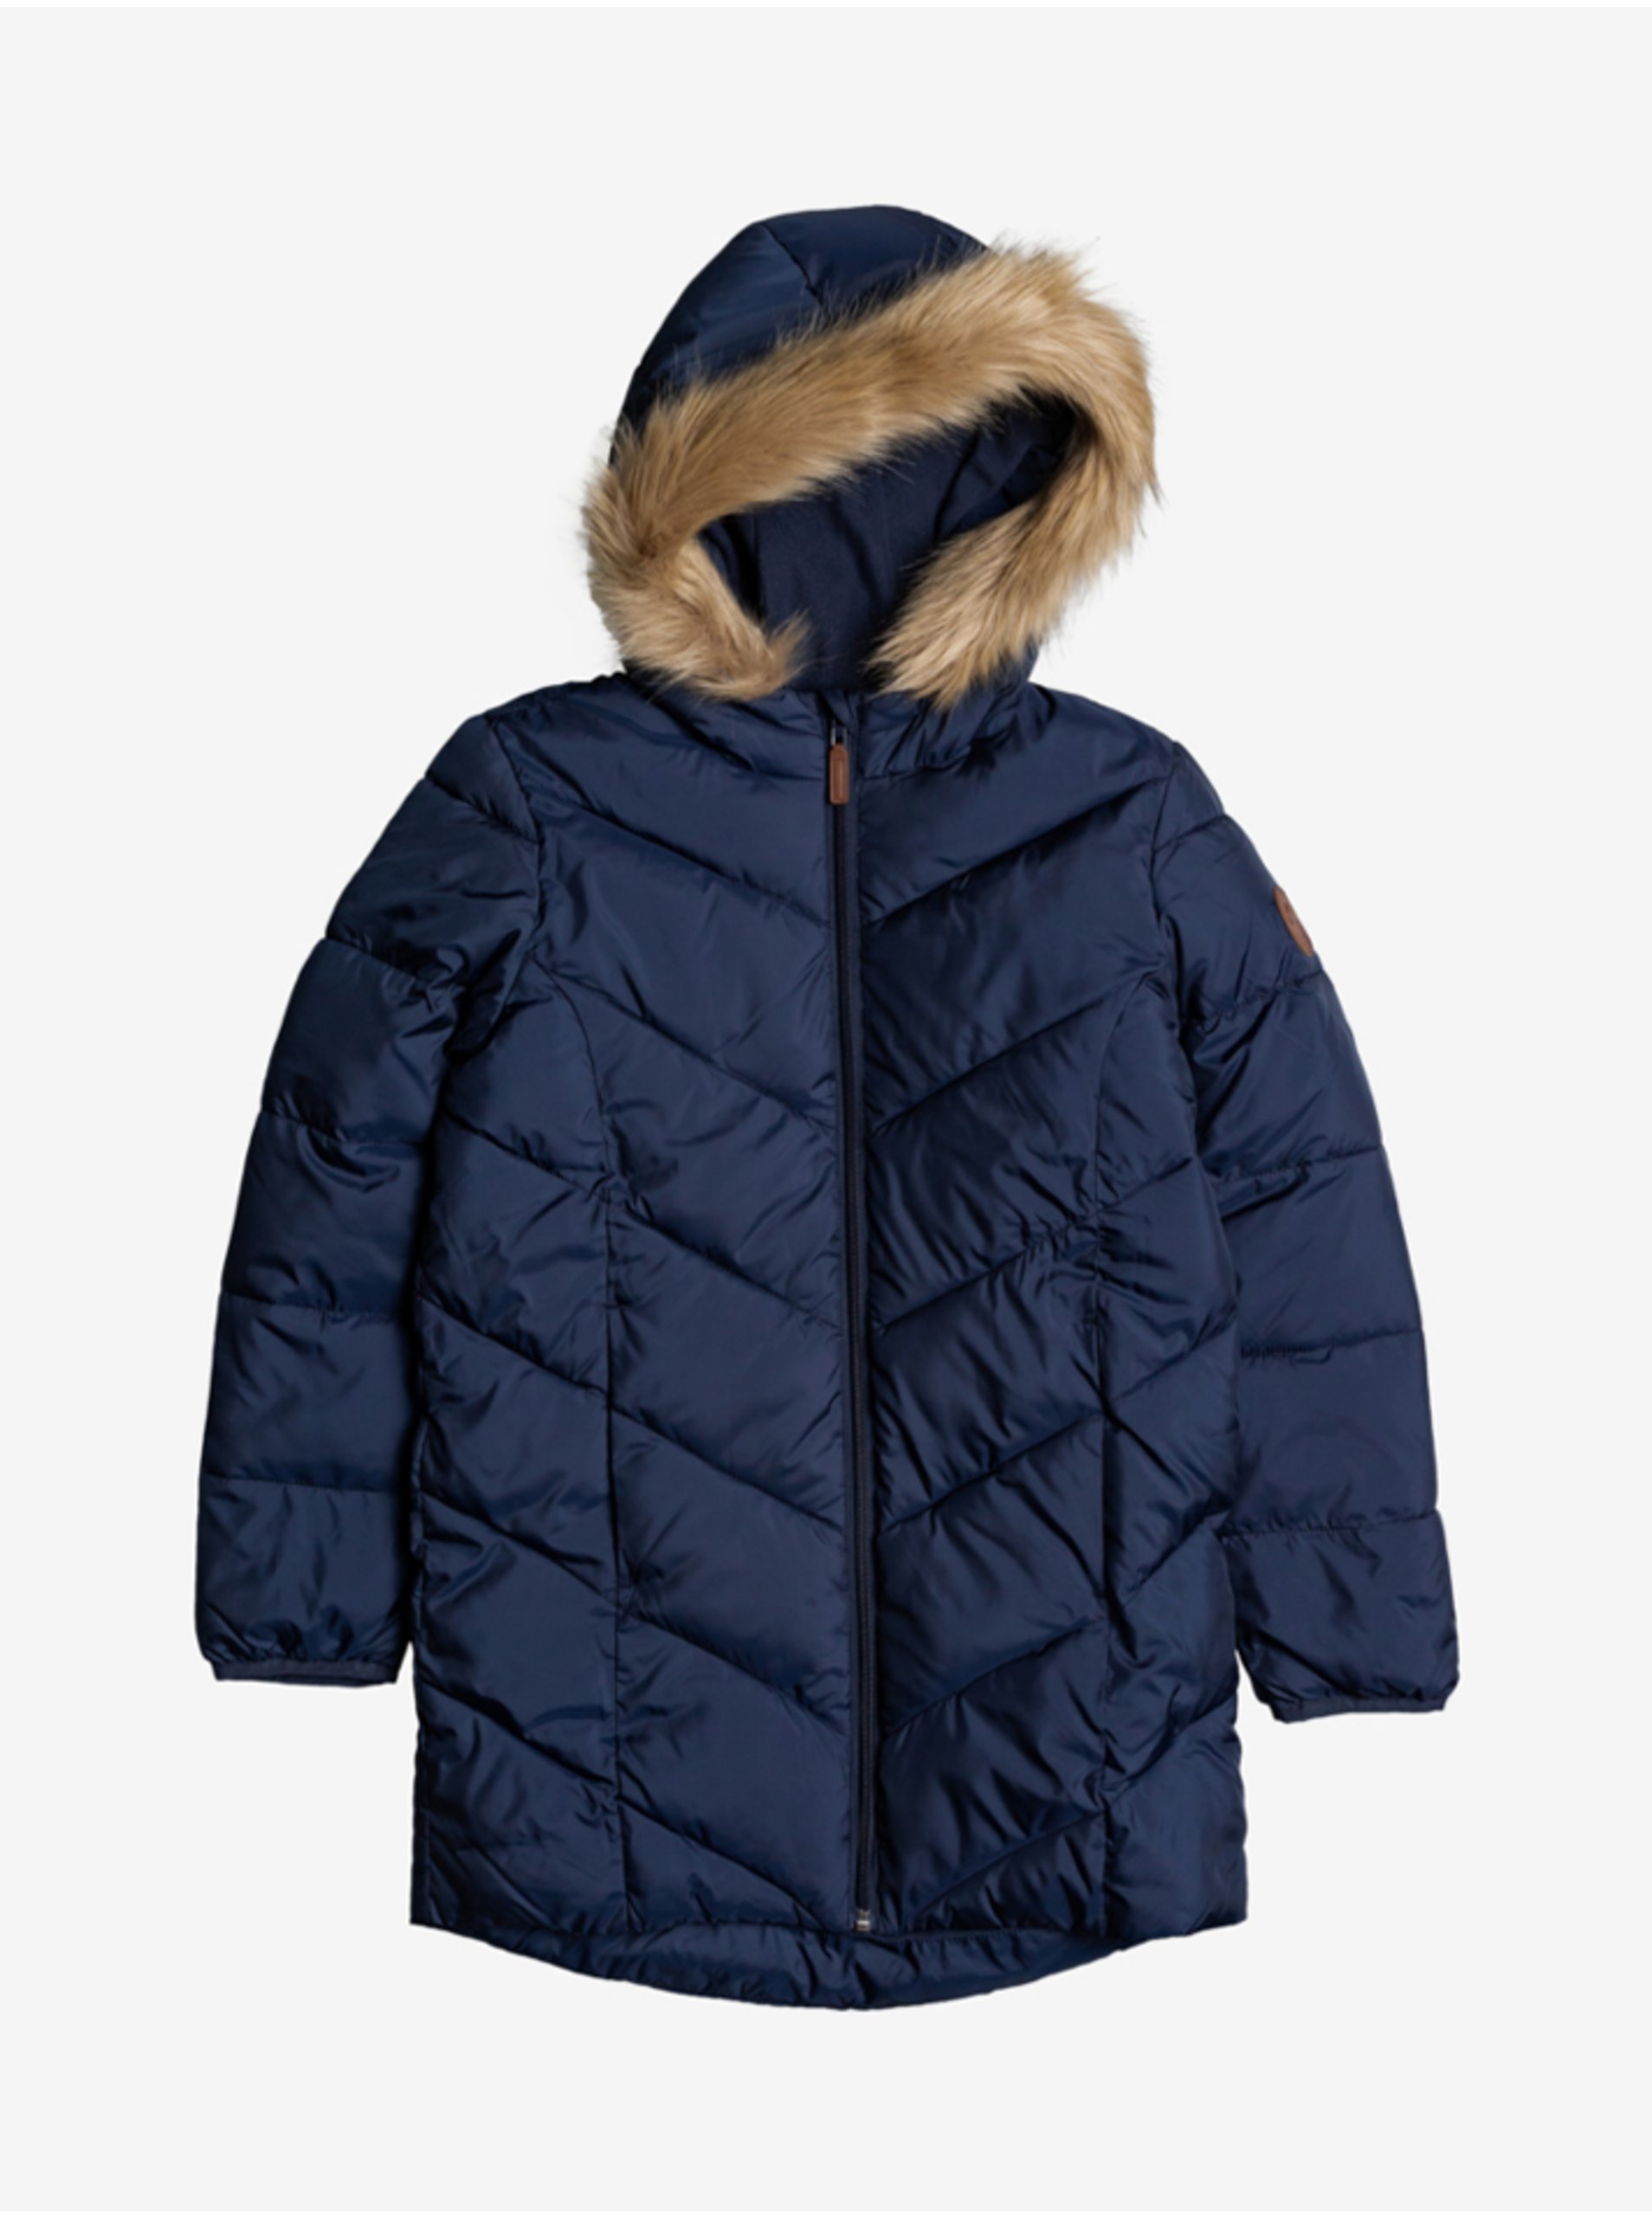 Lacno Tmavomodrý dievčenský prešívaný zimný kabát s kapucou a umelým kožúškom Roxy